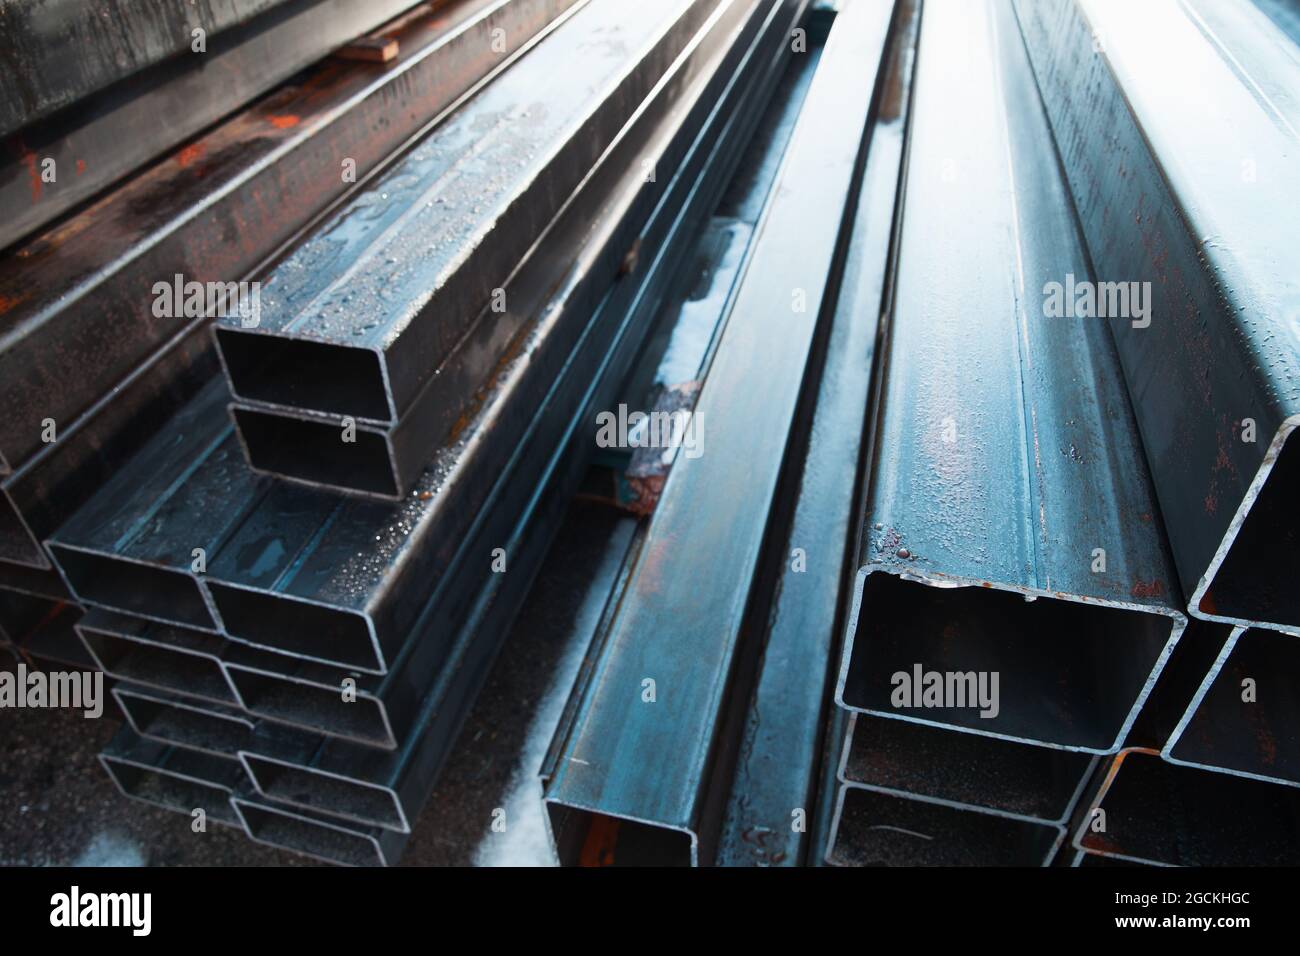 Gewalzte Metallprodukte. Perspektivische Ansicht von Stahlrohren mit rechteckigem Querschnitt Stockfoto